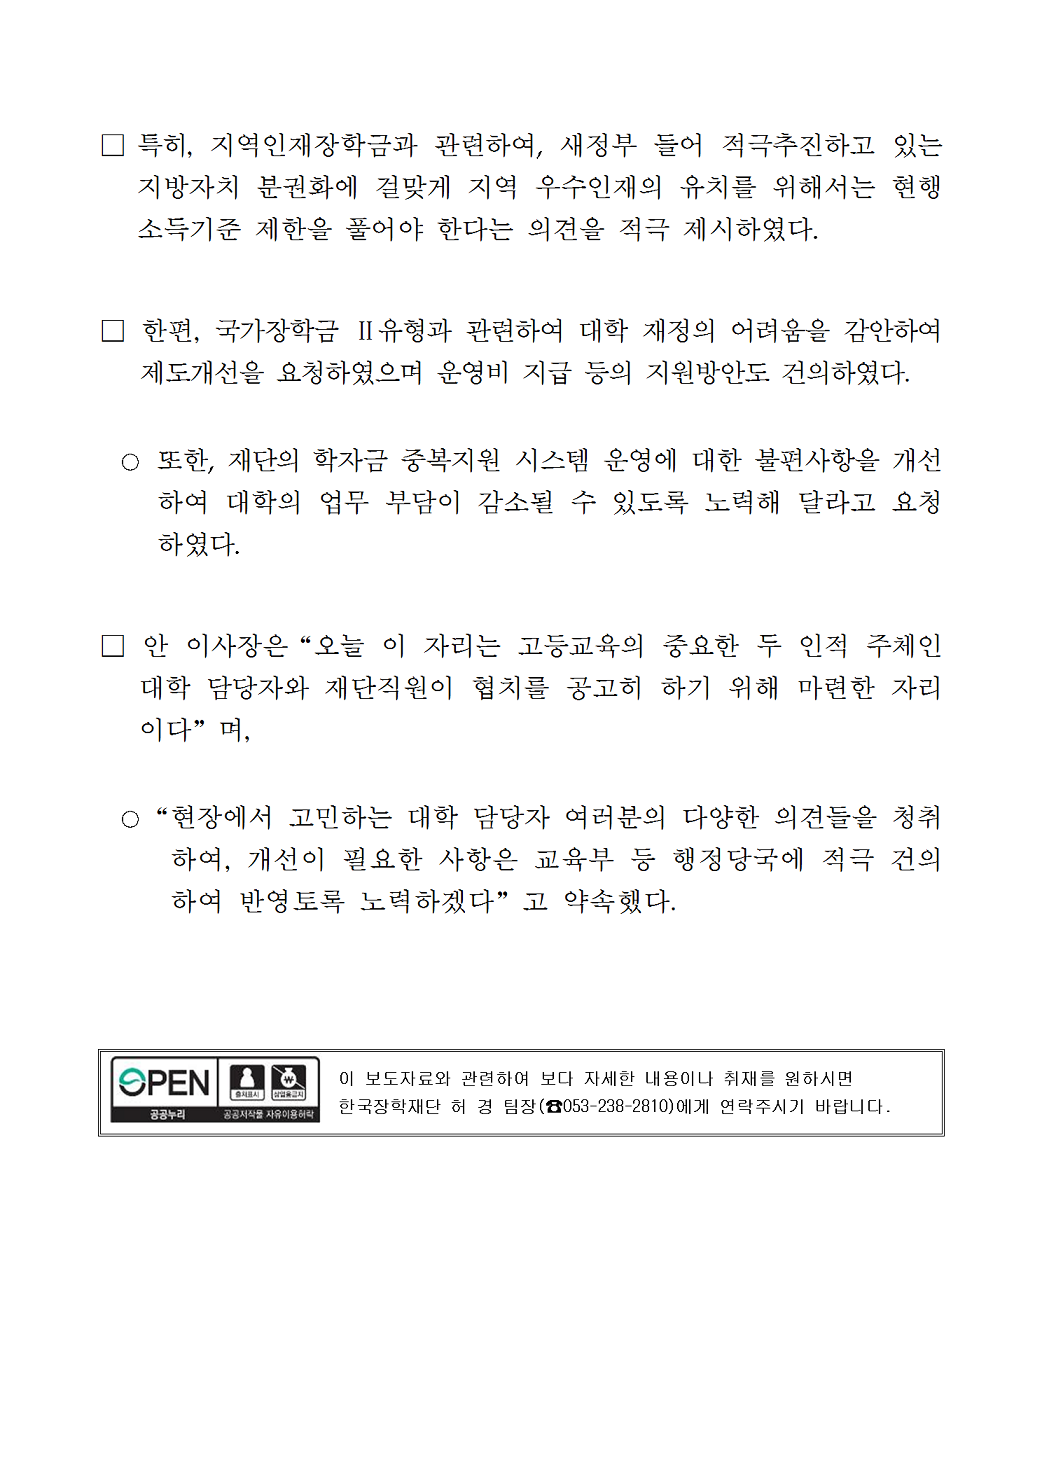 06-26(화)[보도자료] 장학재단-전국대학교 장학융자협의회 공청회 개최003.bmp